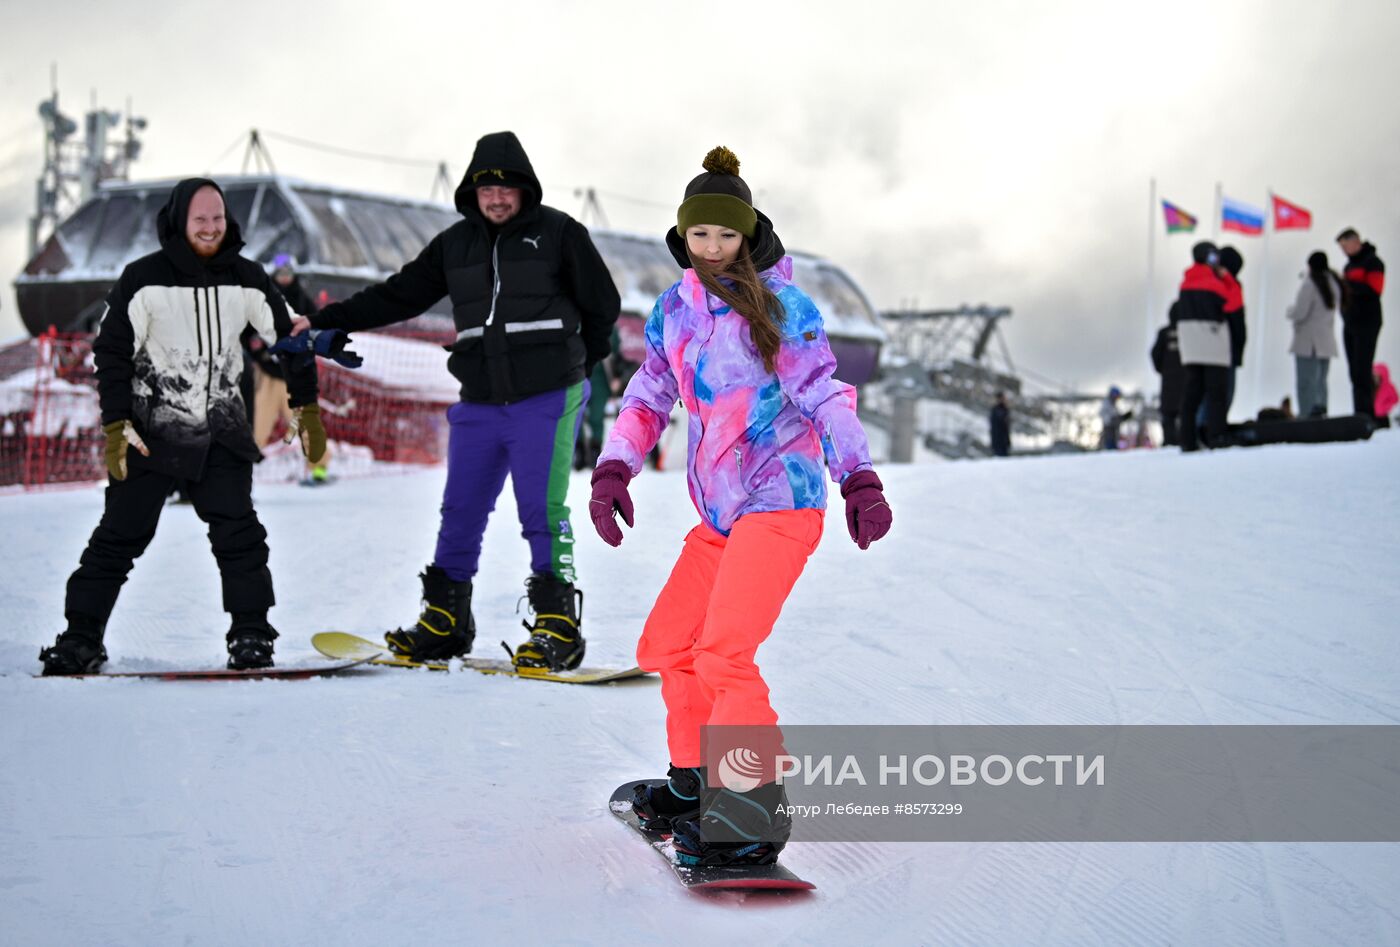 Старт зимнего сезона на горнолыжном курорте "Красная Поляна"